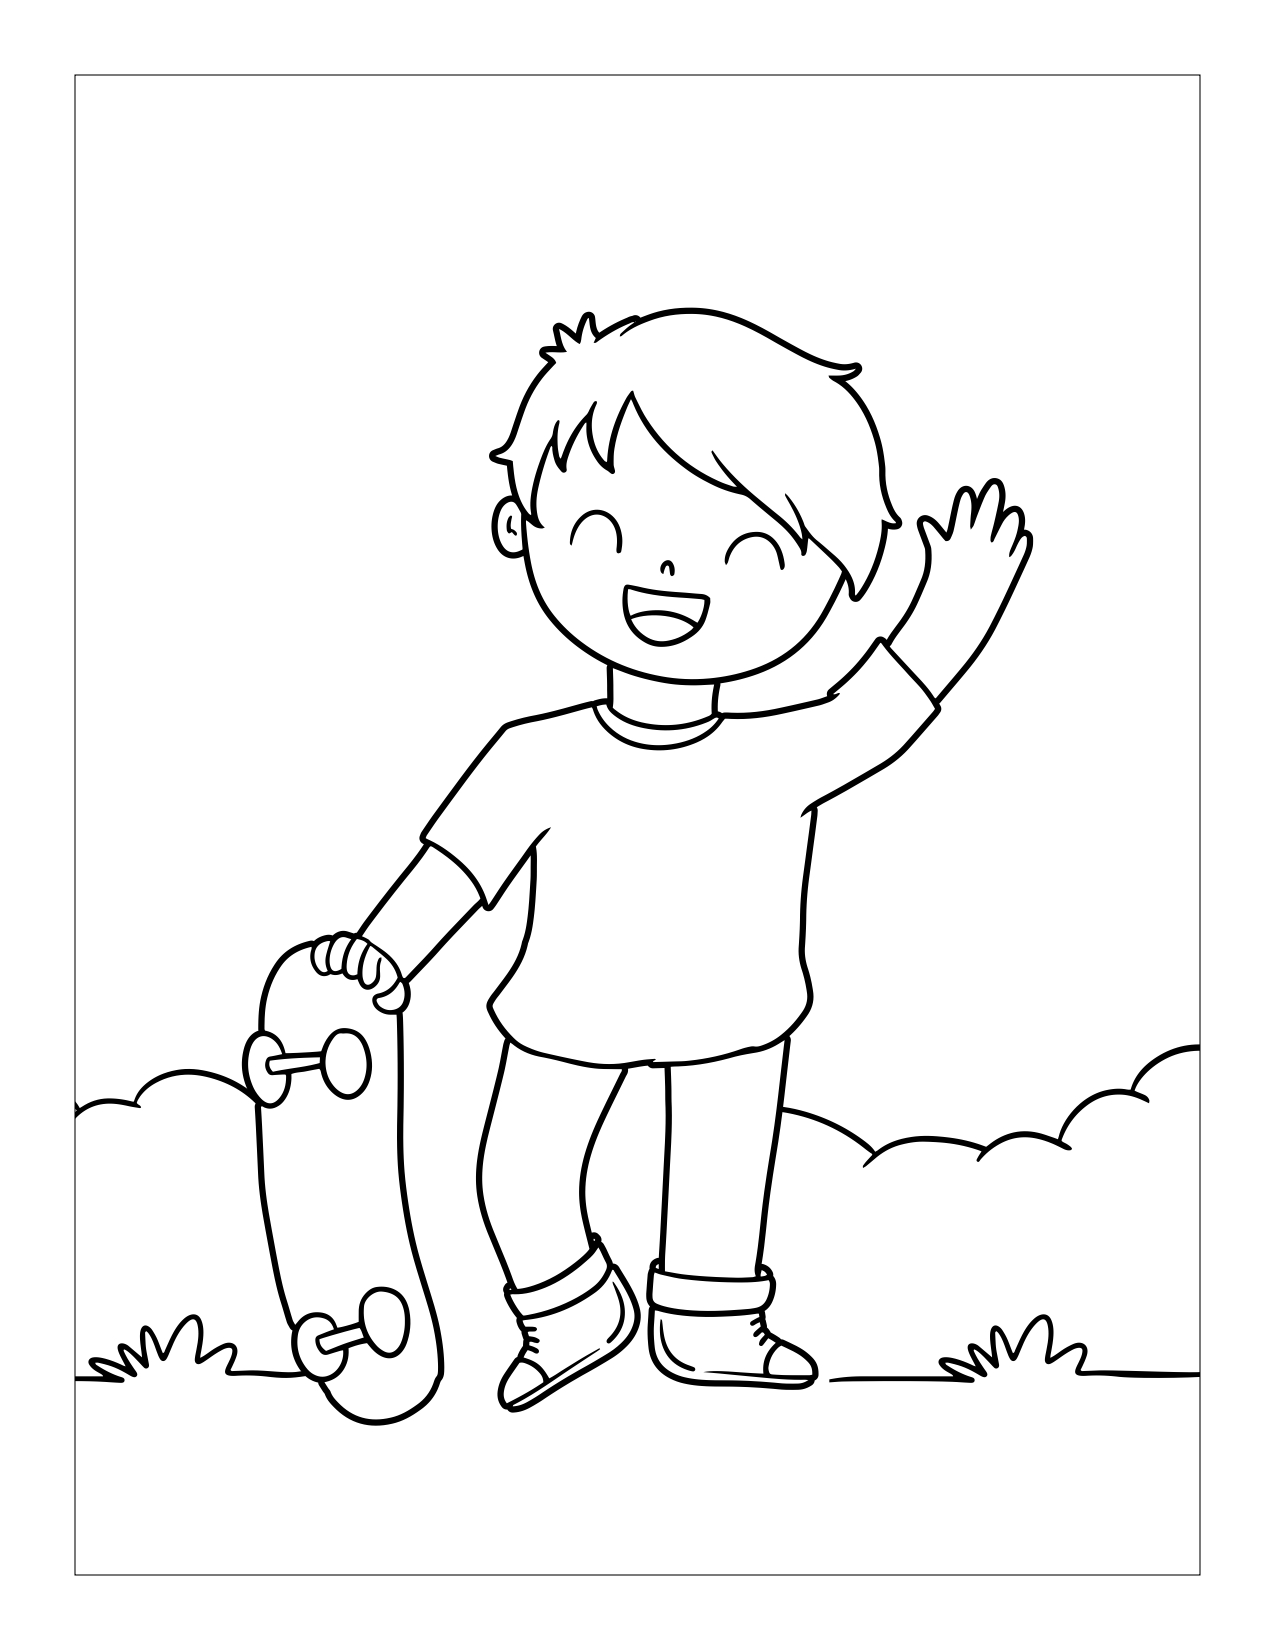 Kleurplaat van kind met skateboard